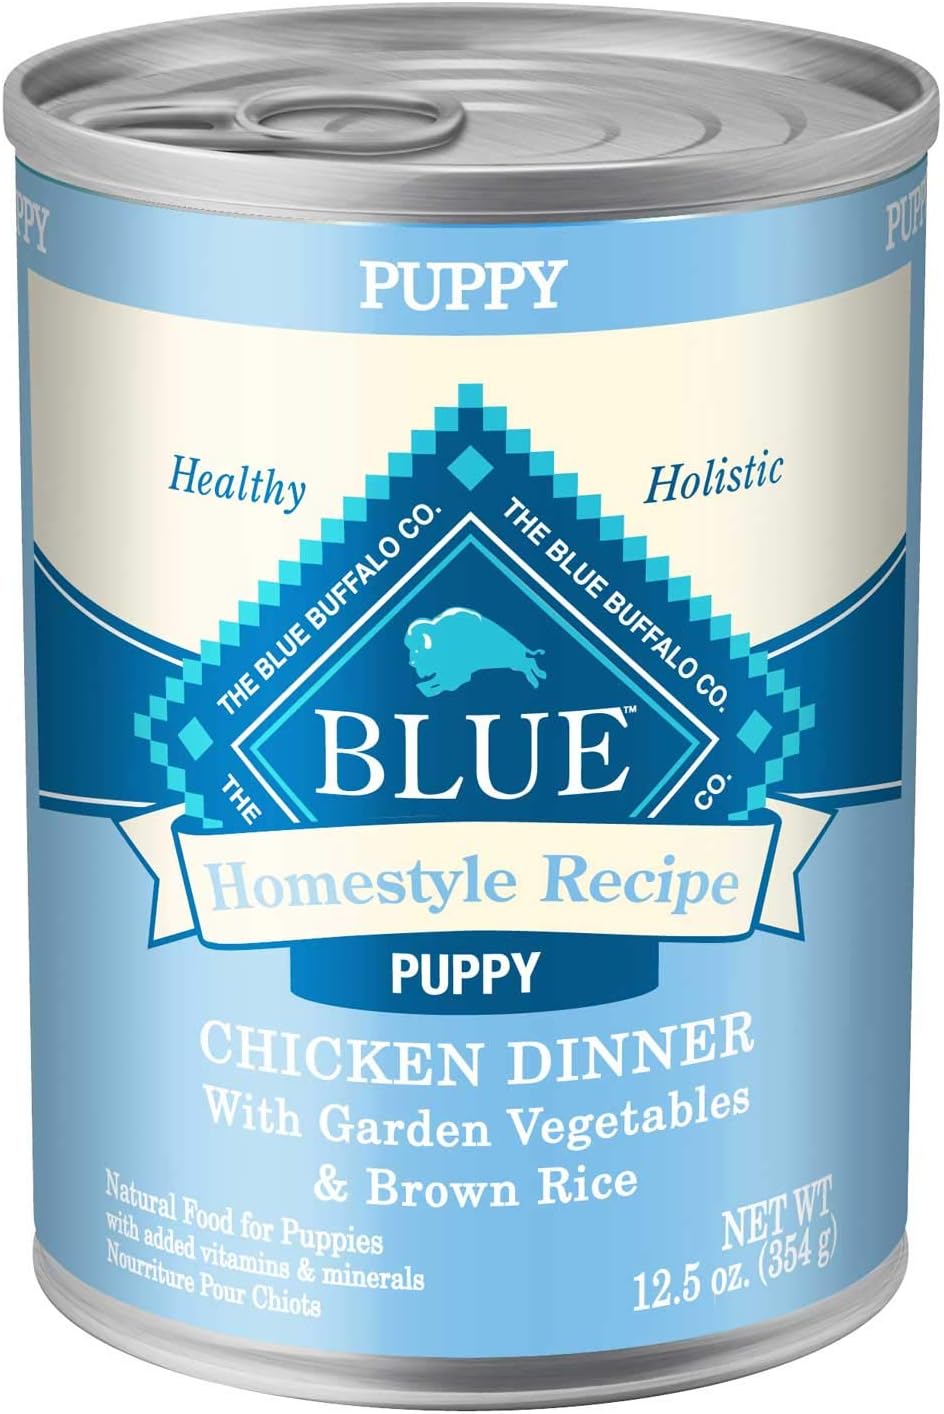 Blue Buffalo Puppy Food